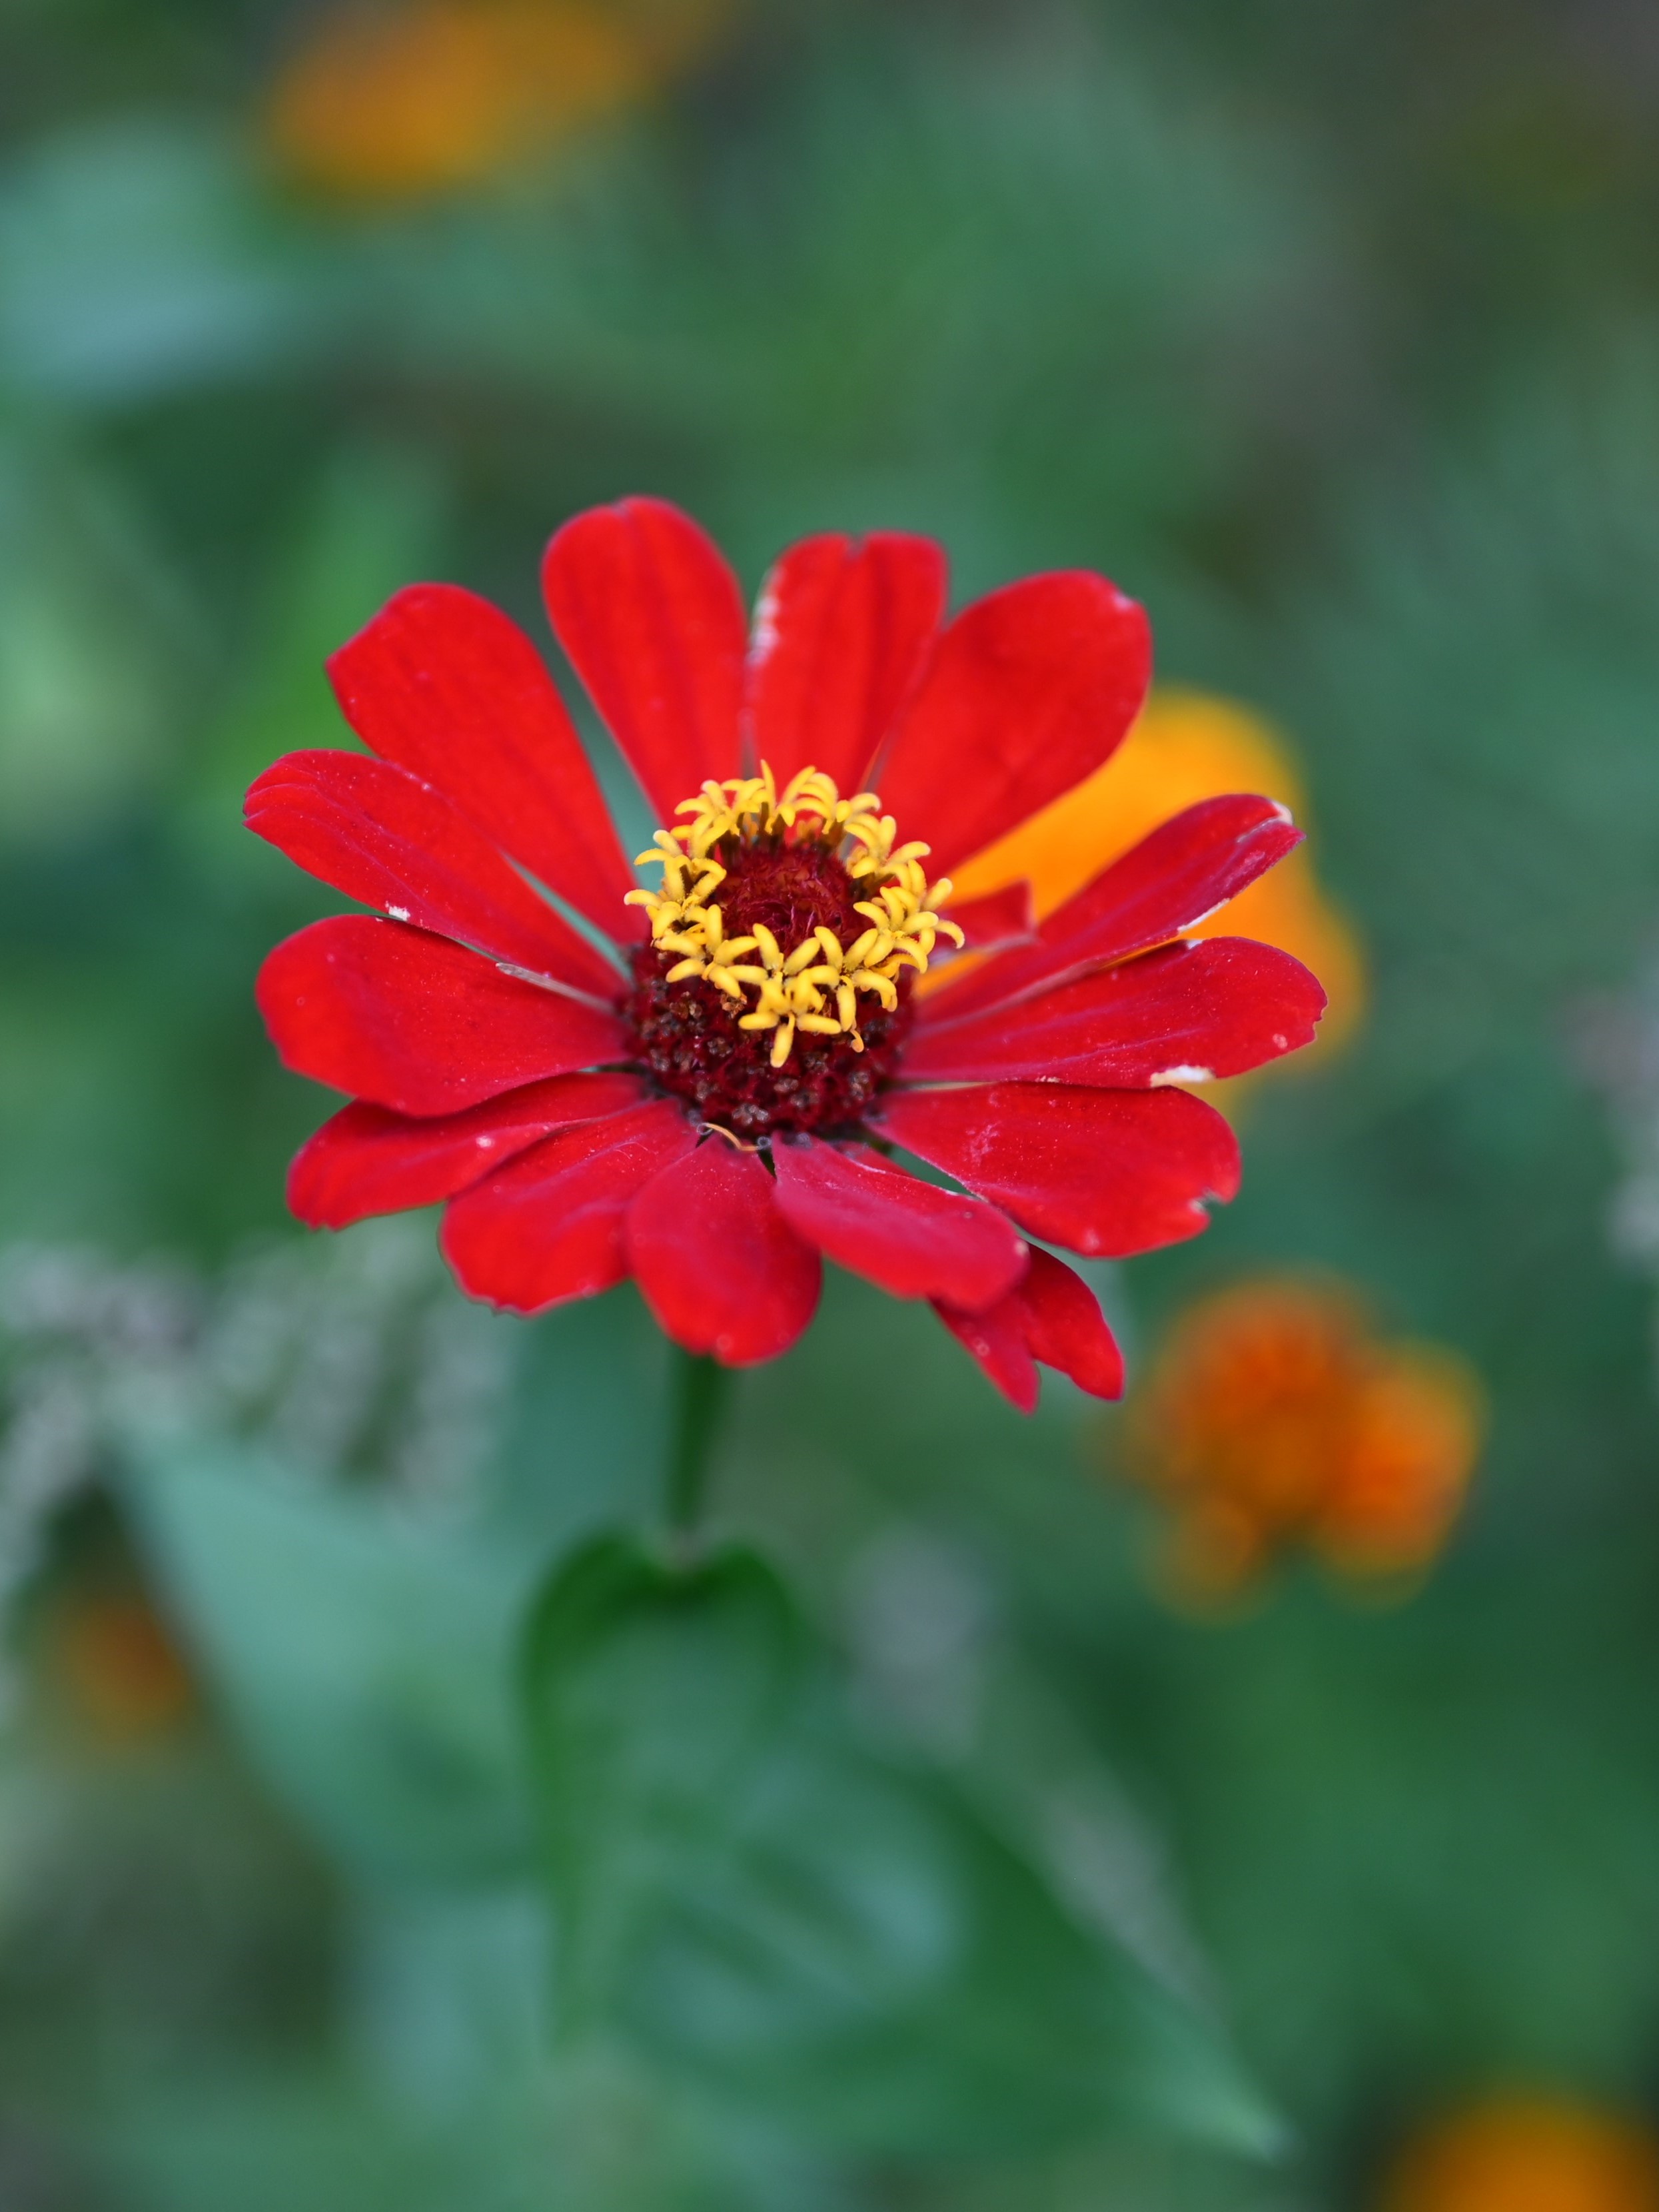 Warsztaty fotograficzne | Zbliżenie na czerwony kwiat z żółtym środkiem. Tło stanowią rozmazane zielone liście..JPG